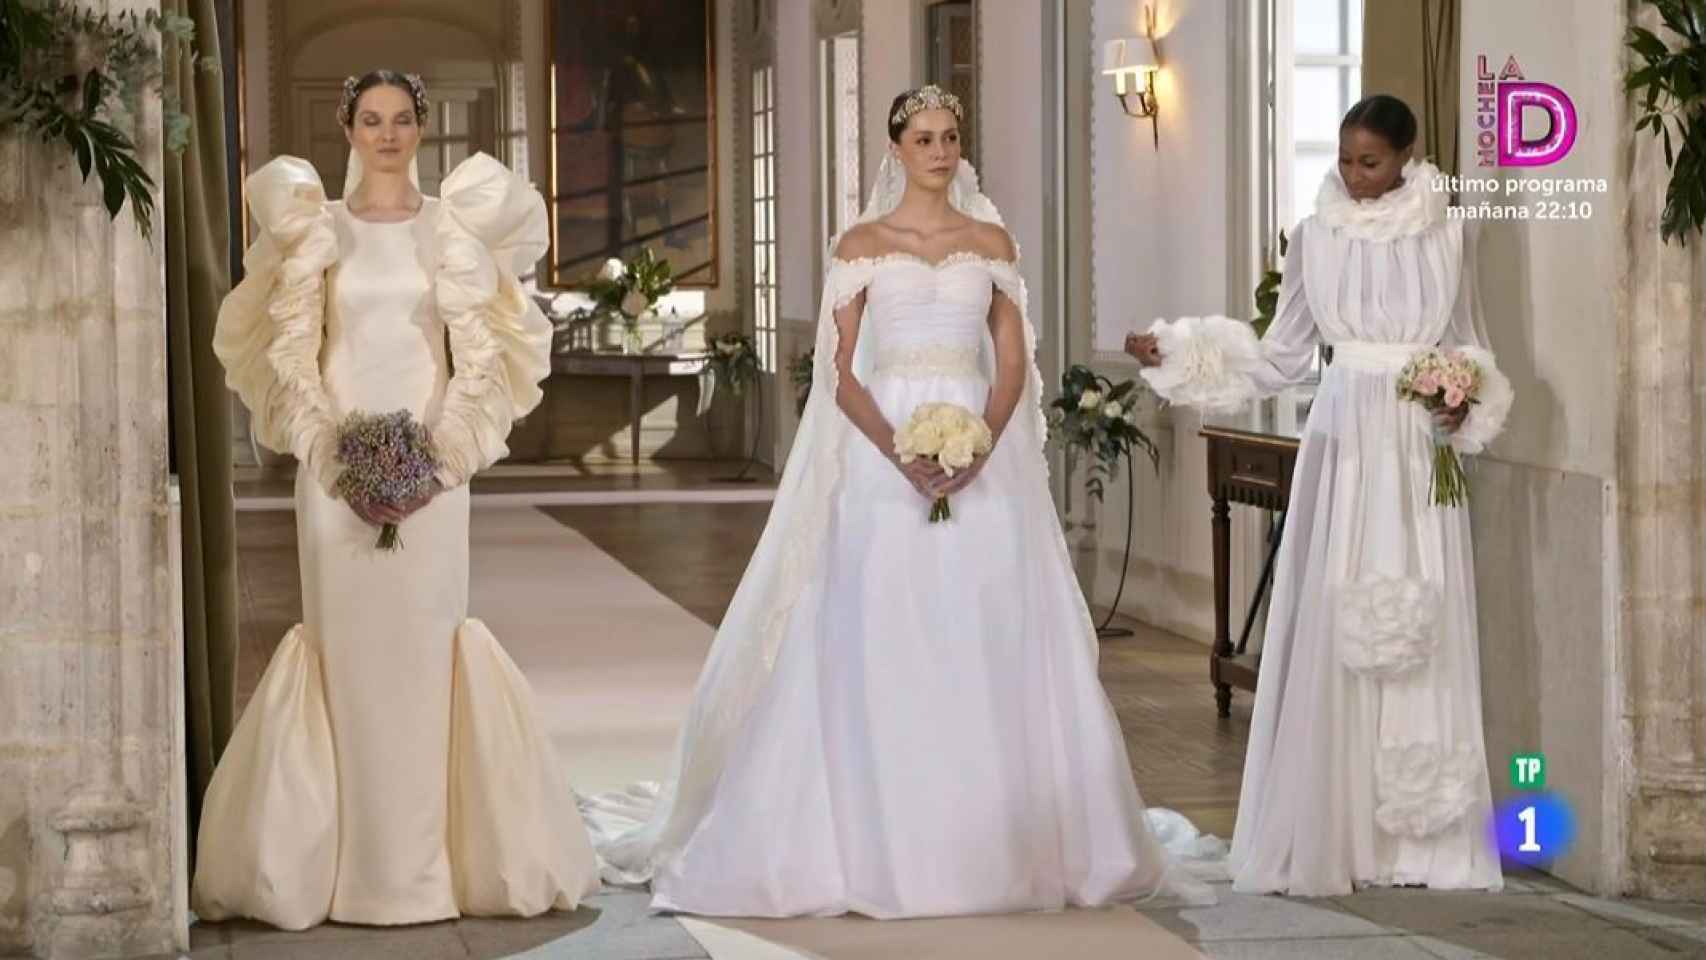 Los tres vestidos de novia que los finalistas debían replicar.